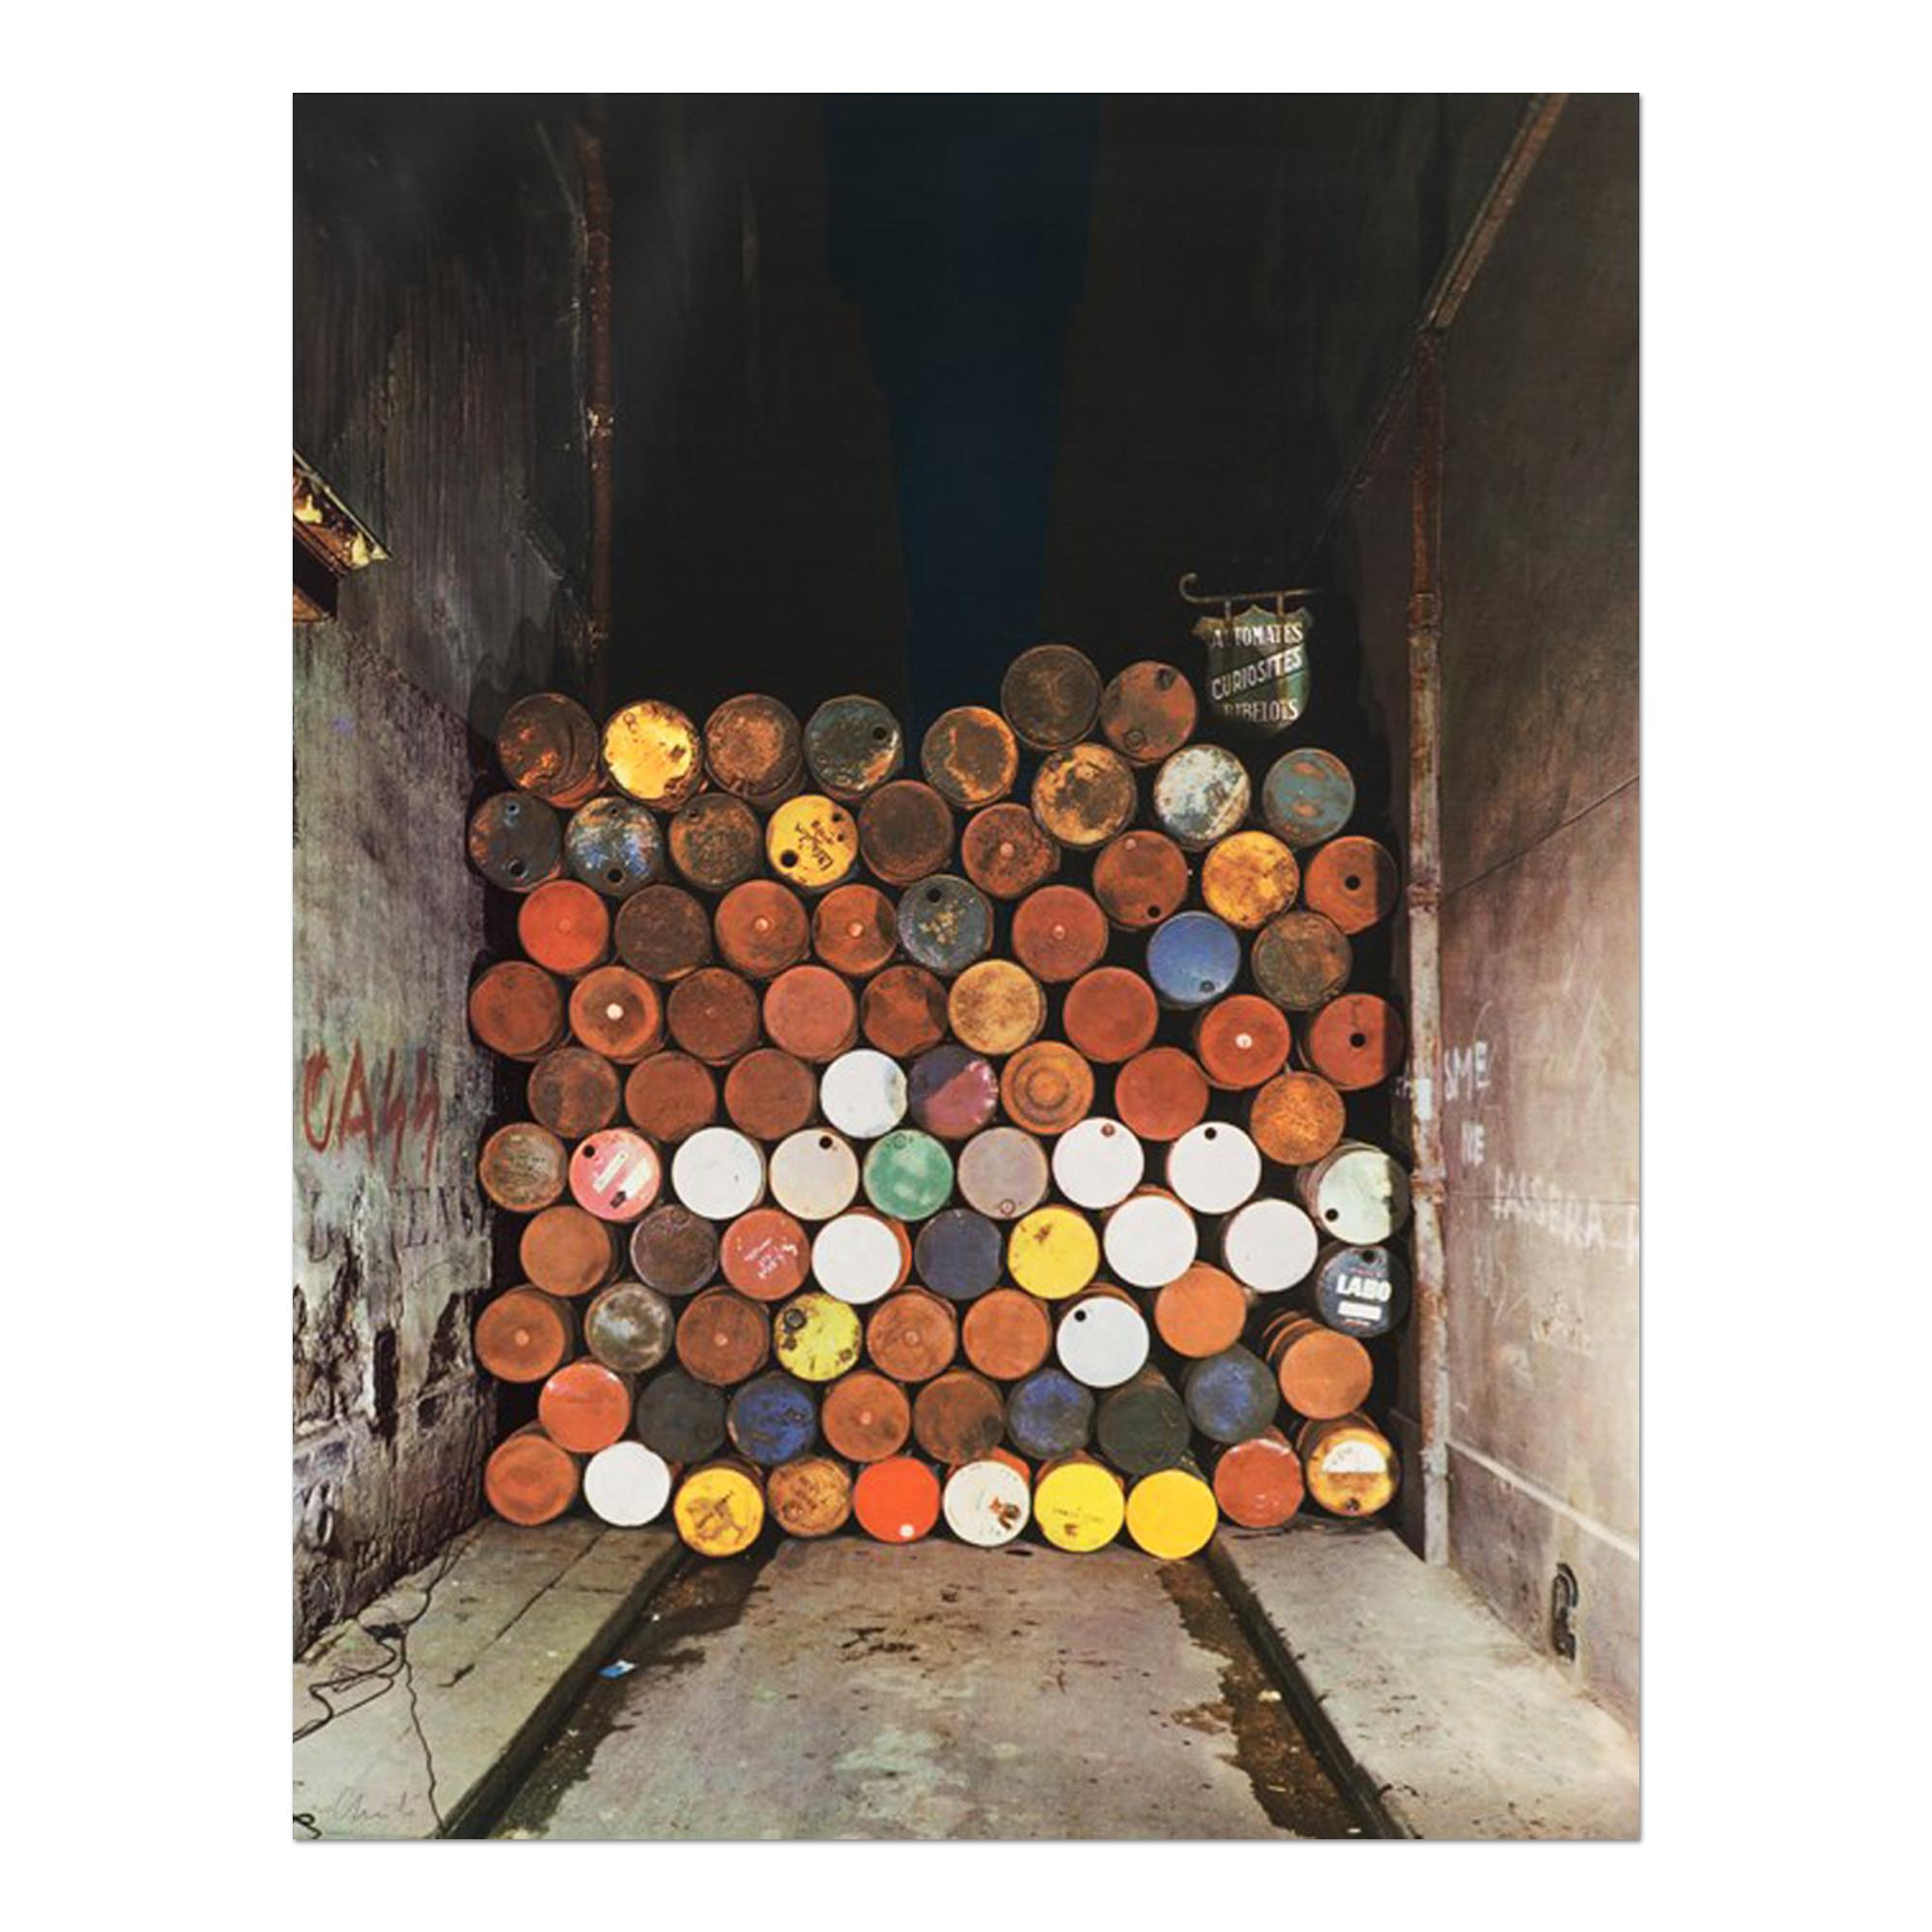 Christo, Rideau de fer - Mur de tonneaux : Impression signée de 1968